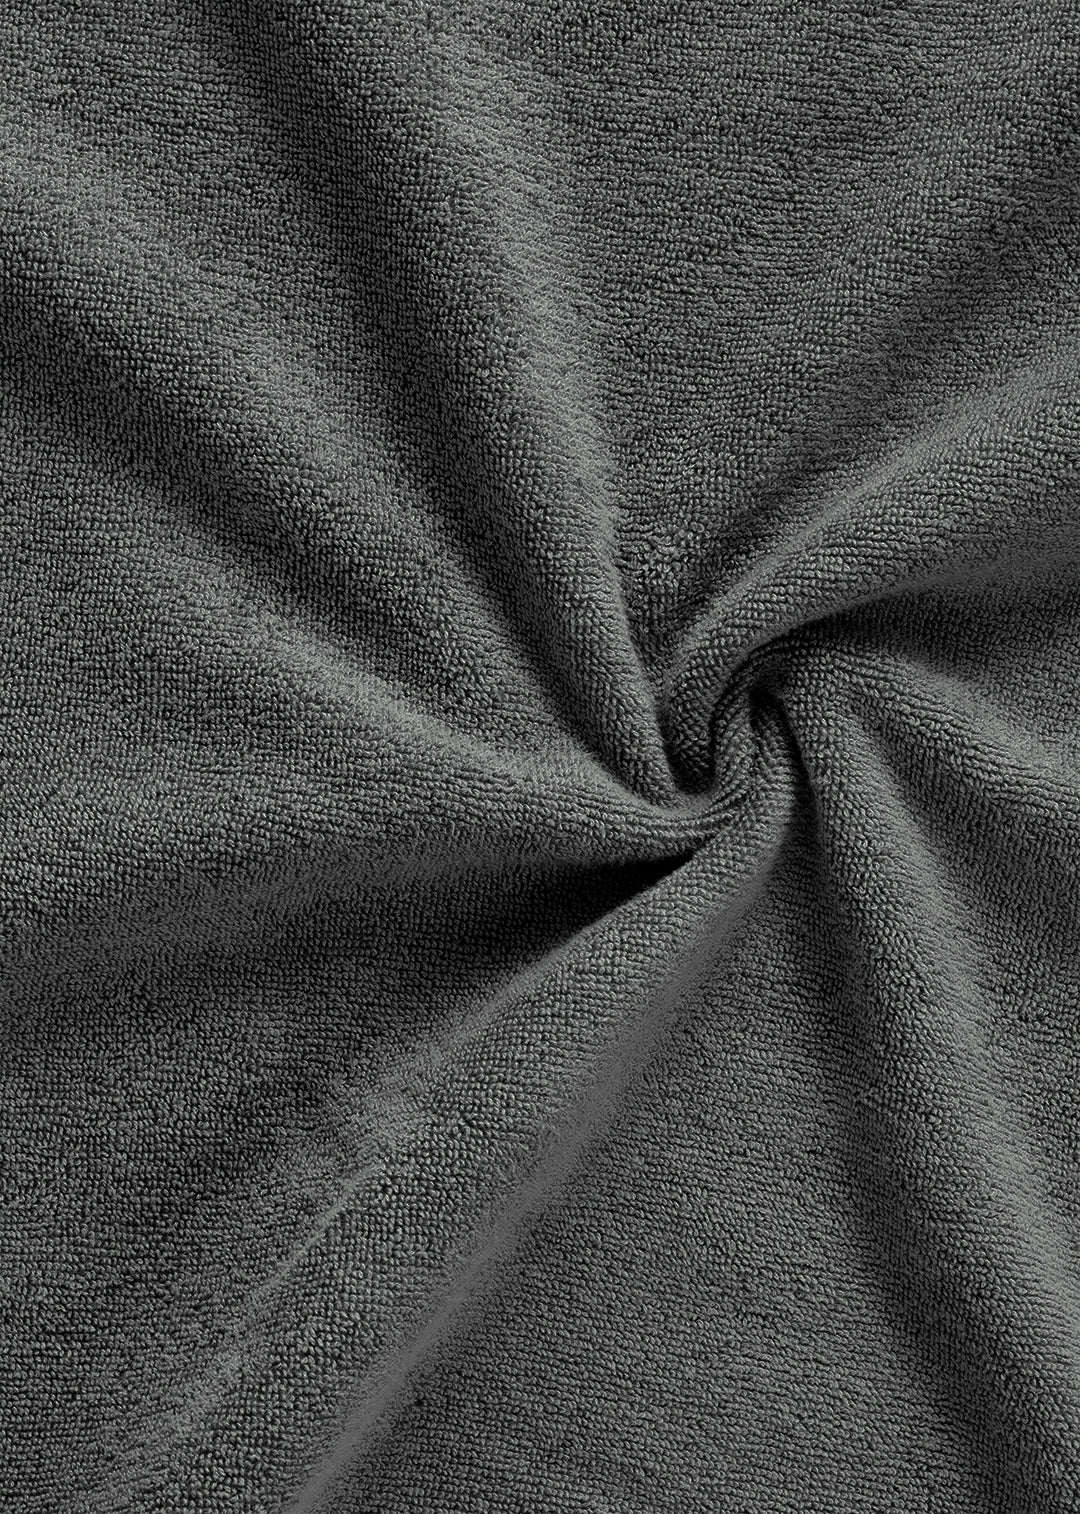 Handtuch Baumwolle Anthrazit 30 x 30 cm